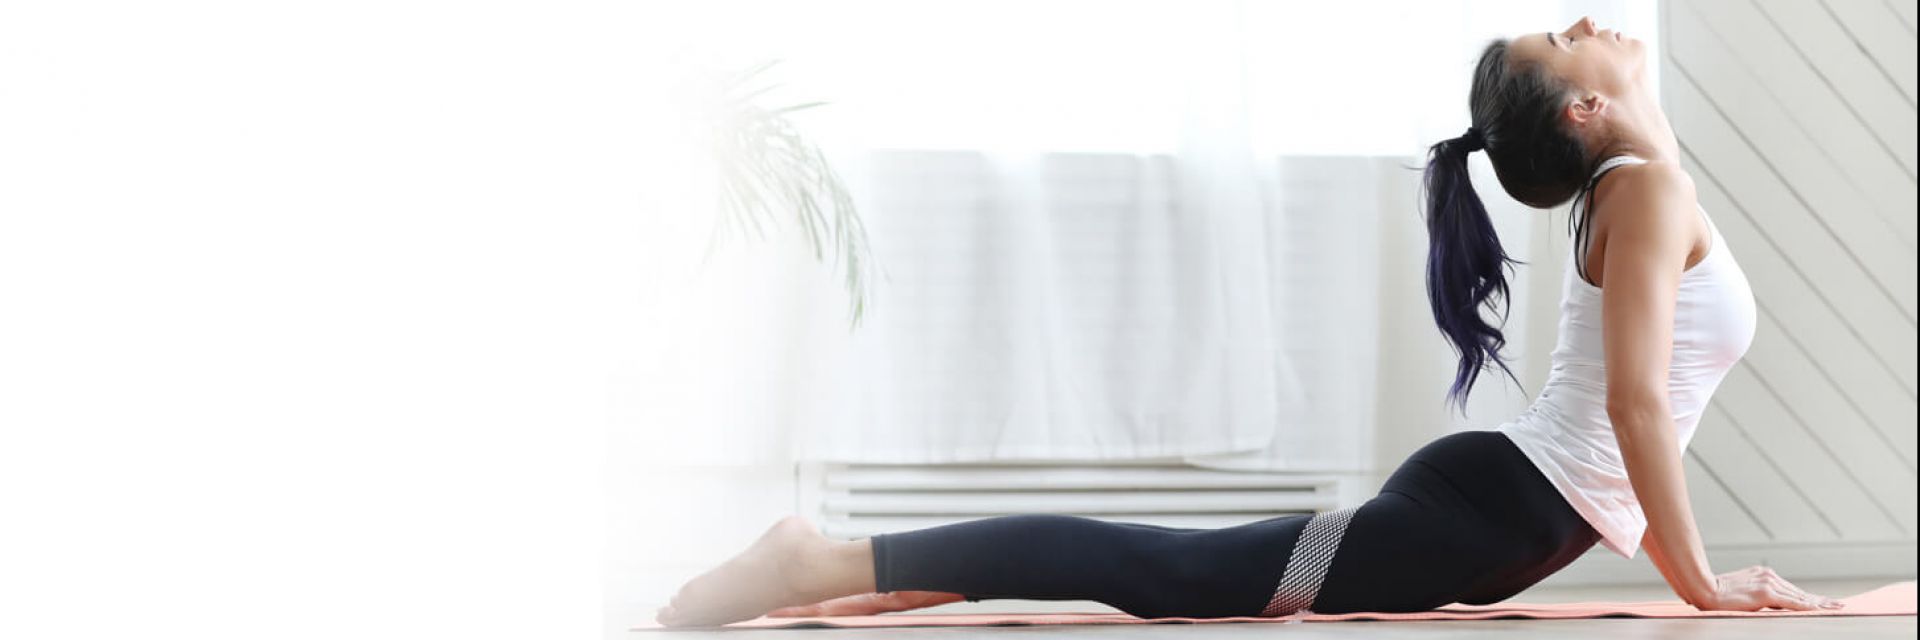 https://www.costadosauipe.com.br/images/news/0401/como-praticar-yoga-topo_1.jpg